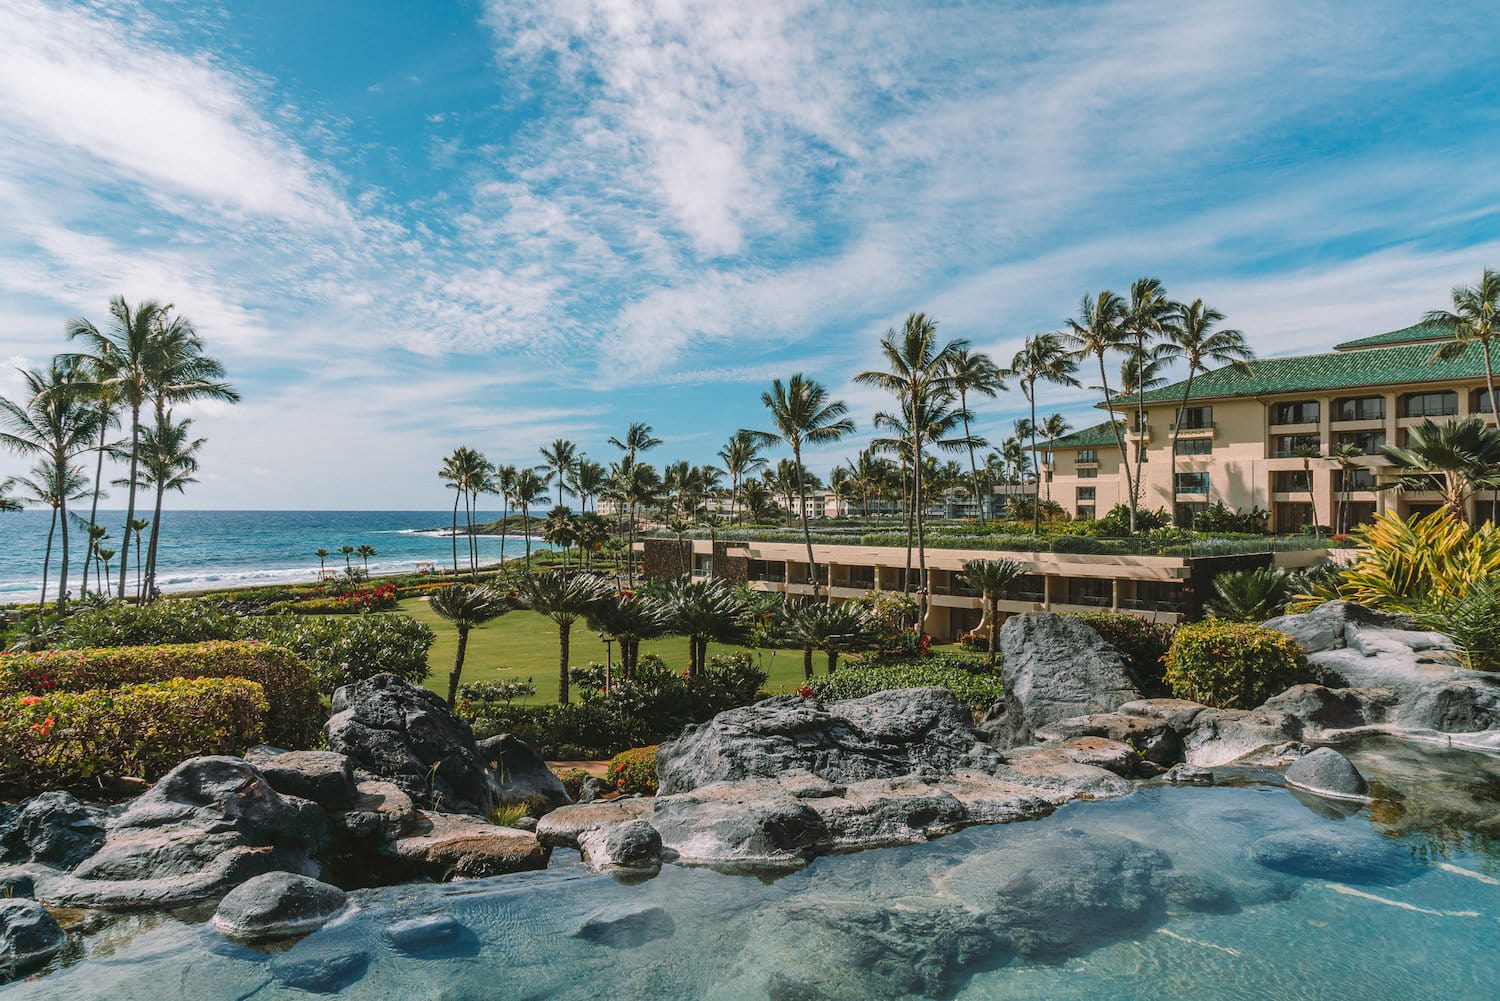 Where To Stay In Kauai 18 